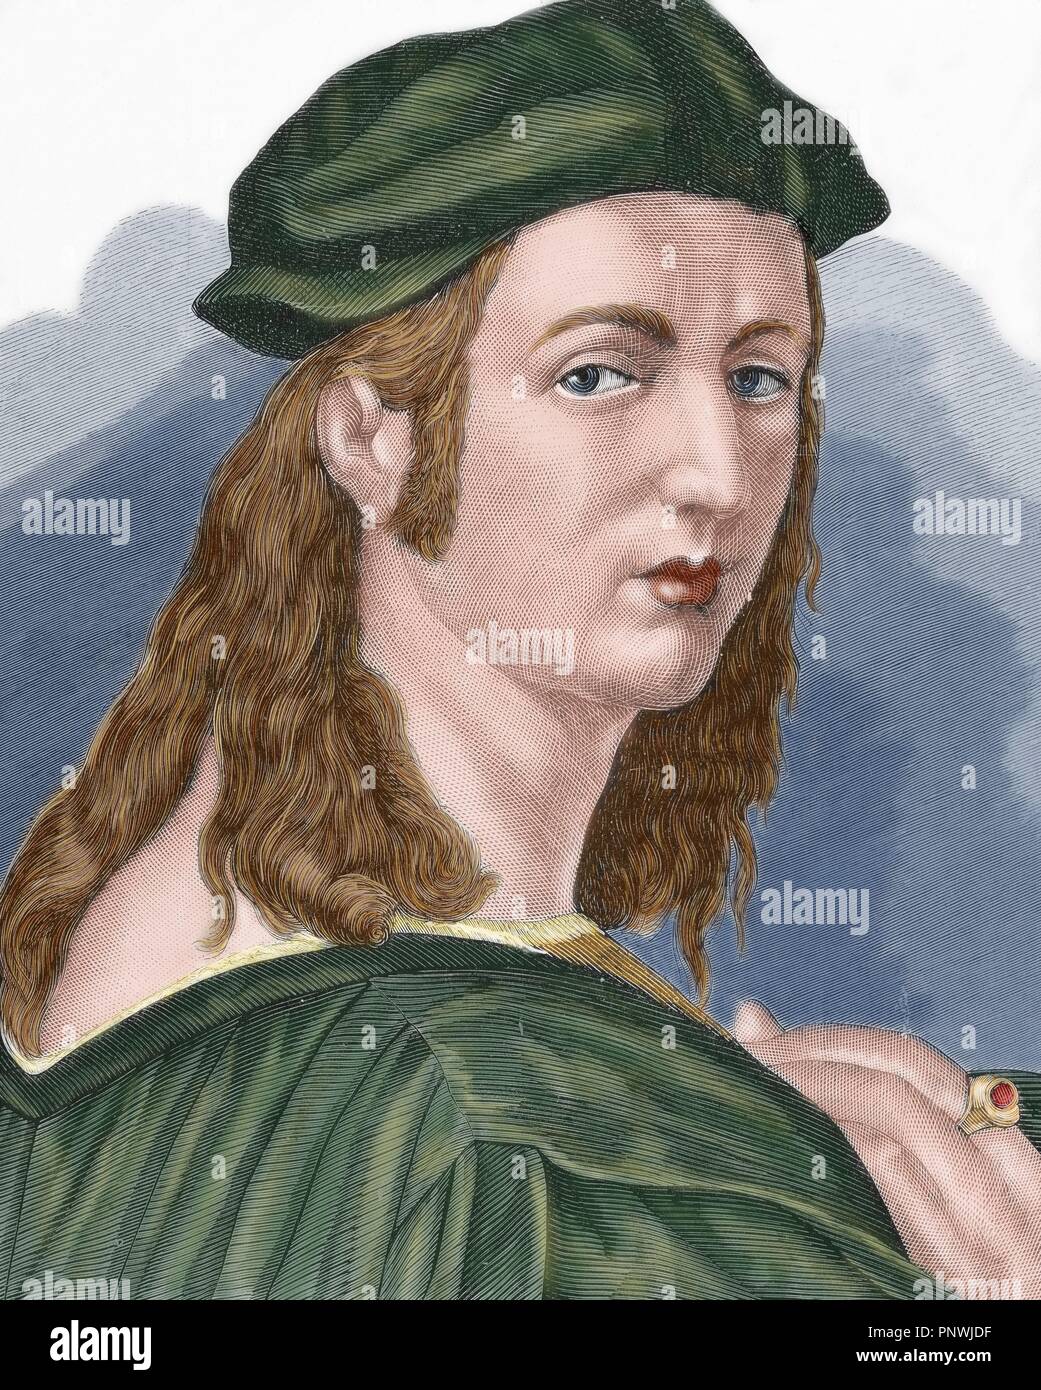 Raphael (1483-1520). Pittore italiano e architetto del Rinascimento. Ritratto. Incisione colorata. Foto Stock